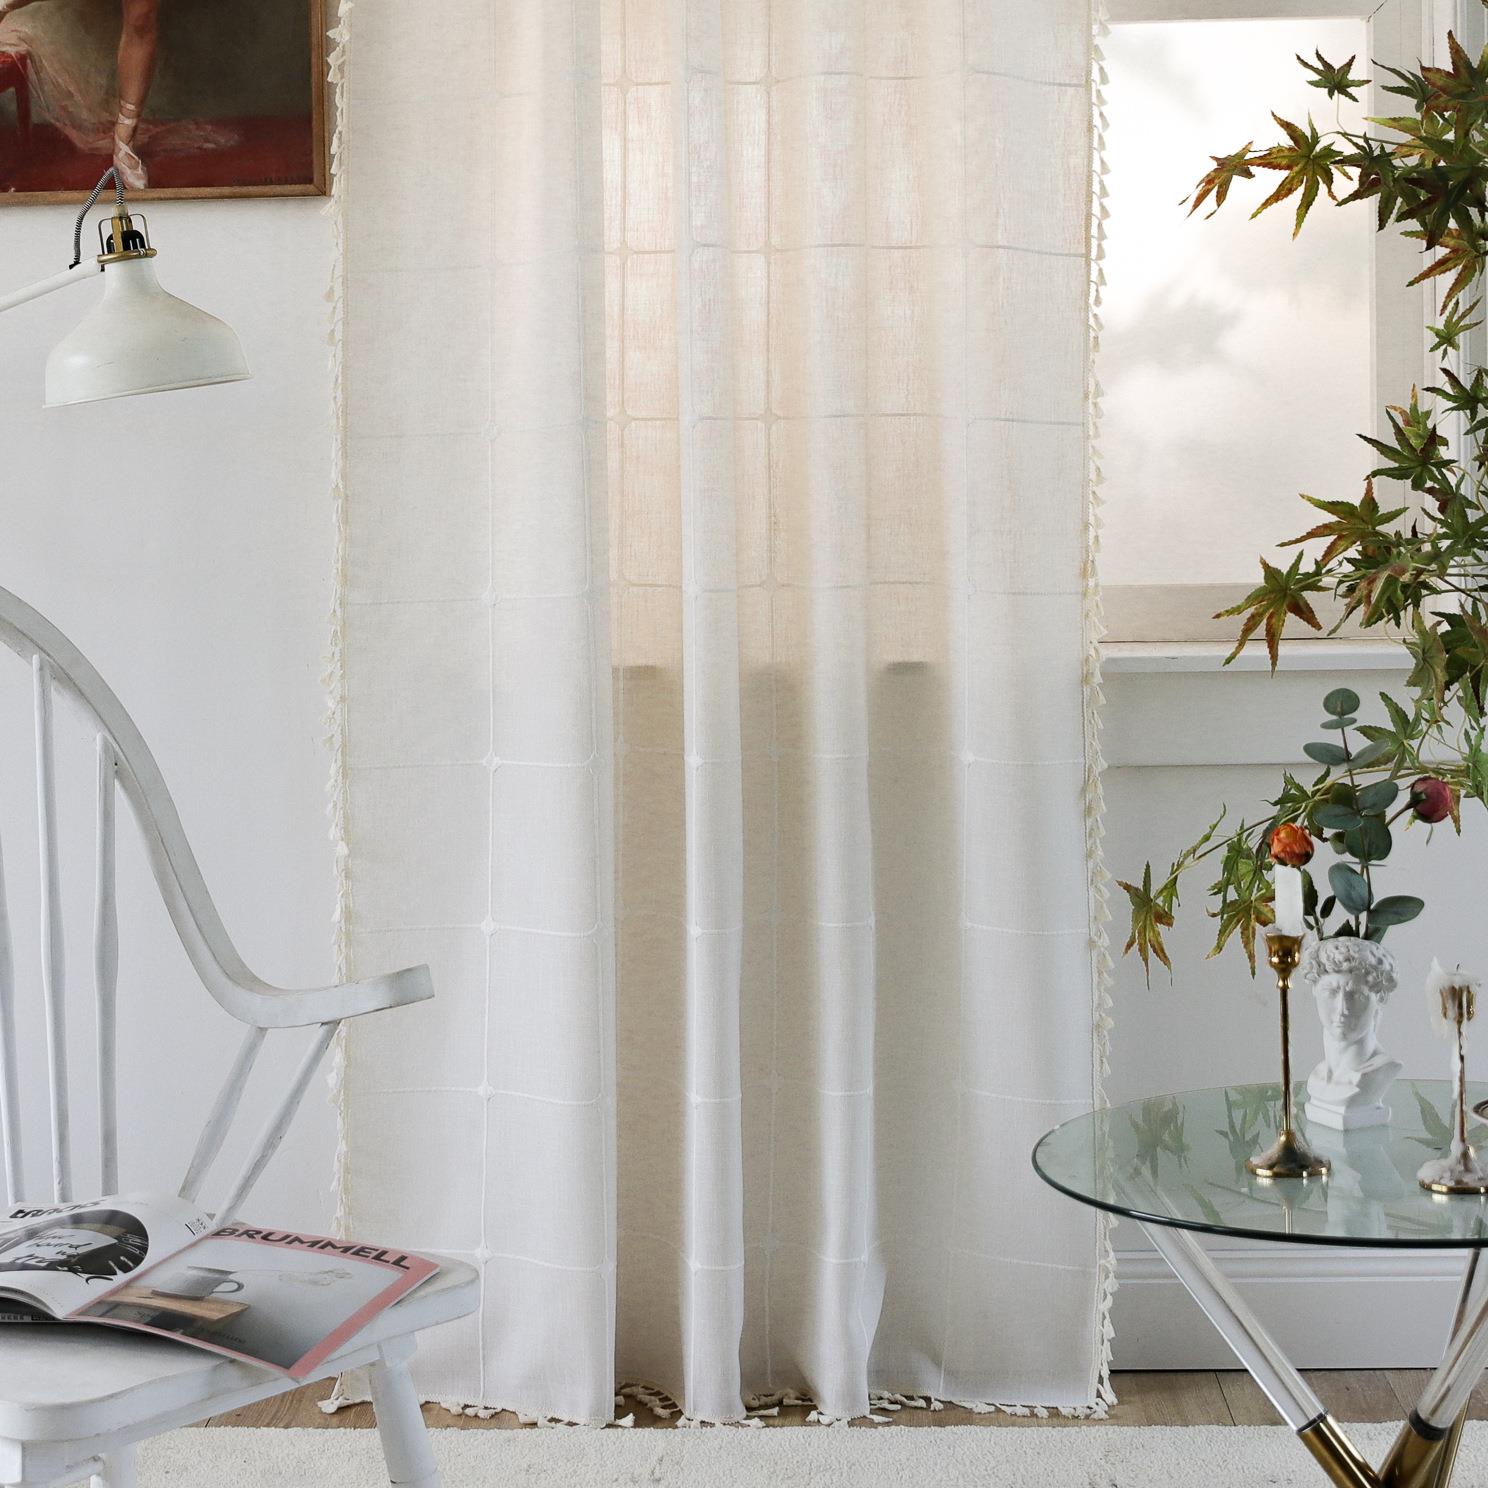 美式風刺繡白色大格子窗簾多種尺寸可選裝飾飄窗廚房小窗戶風格百搭遮光效果好 (2.9折)